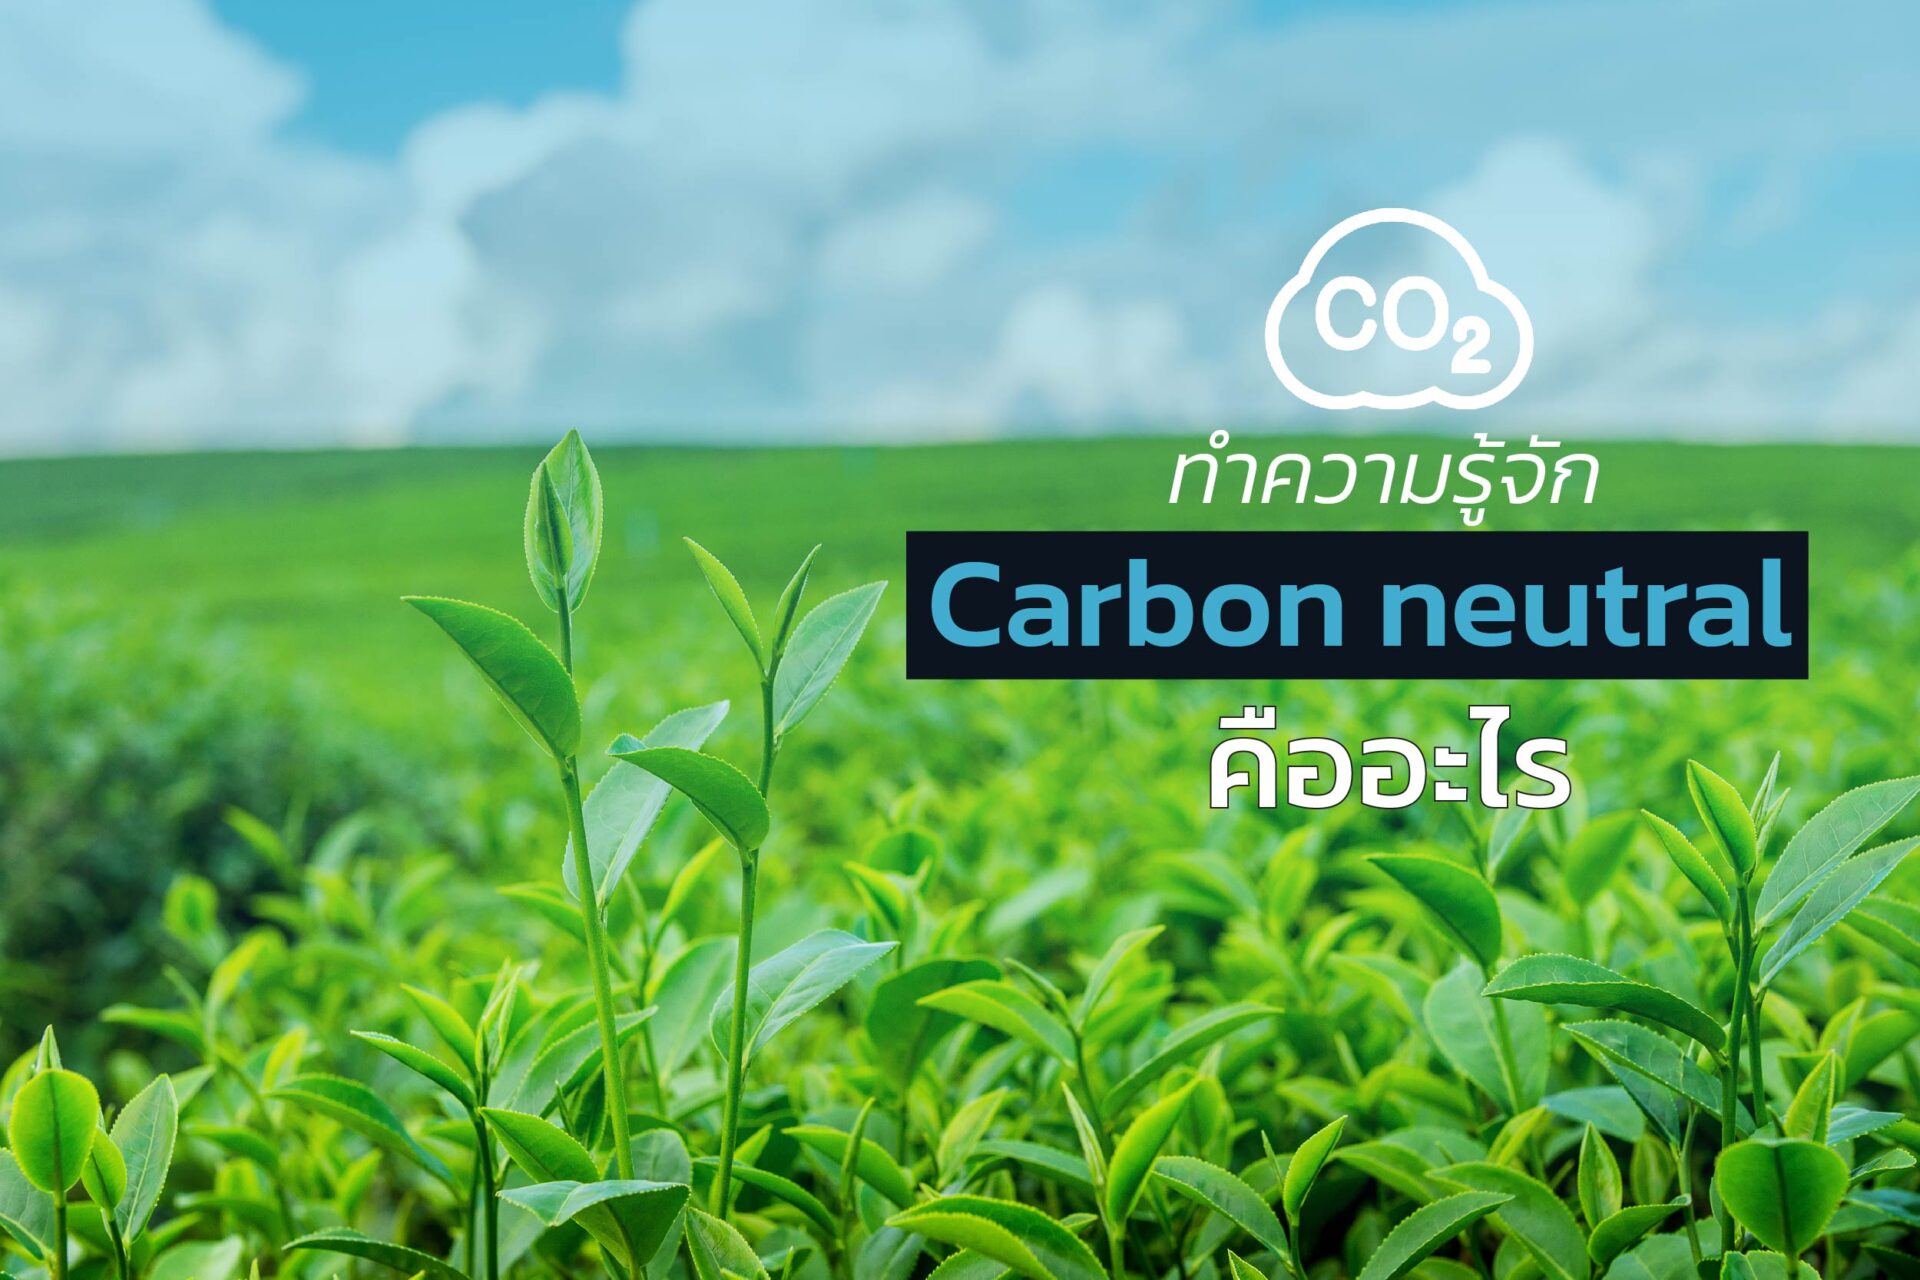 ทำความรู้จัก Carbon neutral คืออะไร